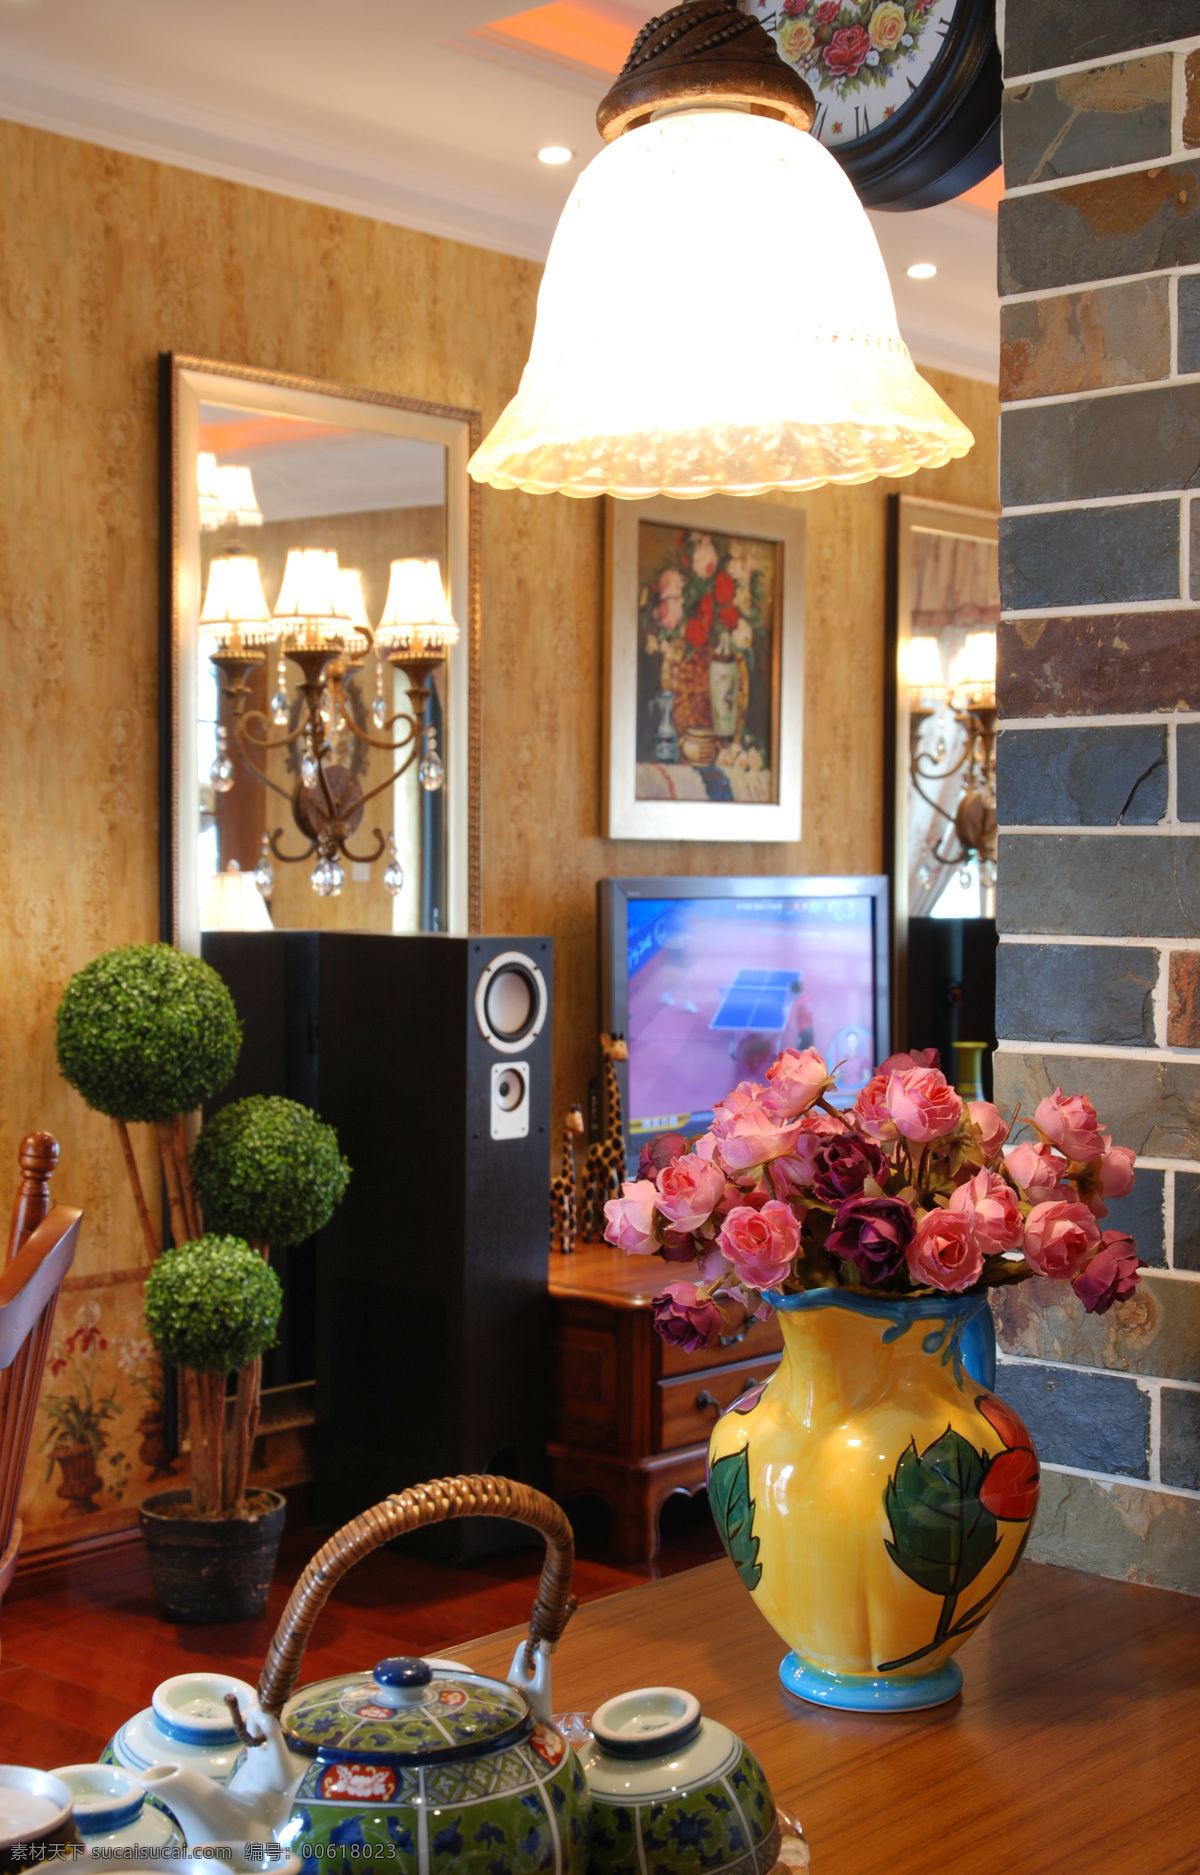 中式 古典 风 室内设计 客厅 电视机 效果图 桌子 吊灯 音响 照片背景墙 现代 简约 家装